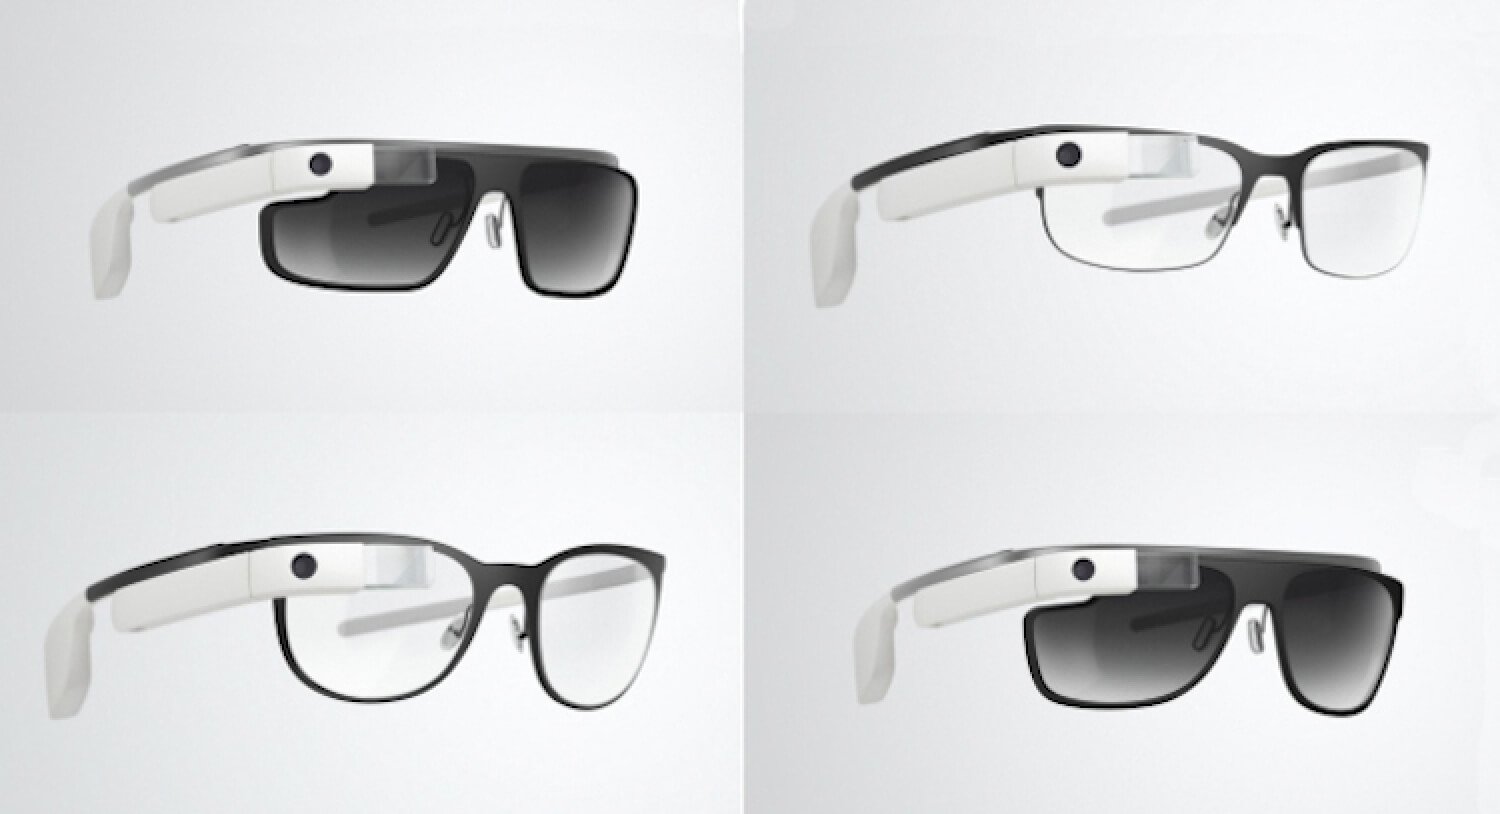 В продажу поступили титановые оправы для Google Glass по $225. Фото.